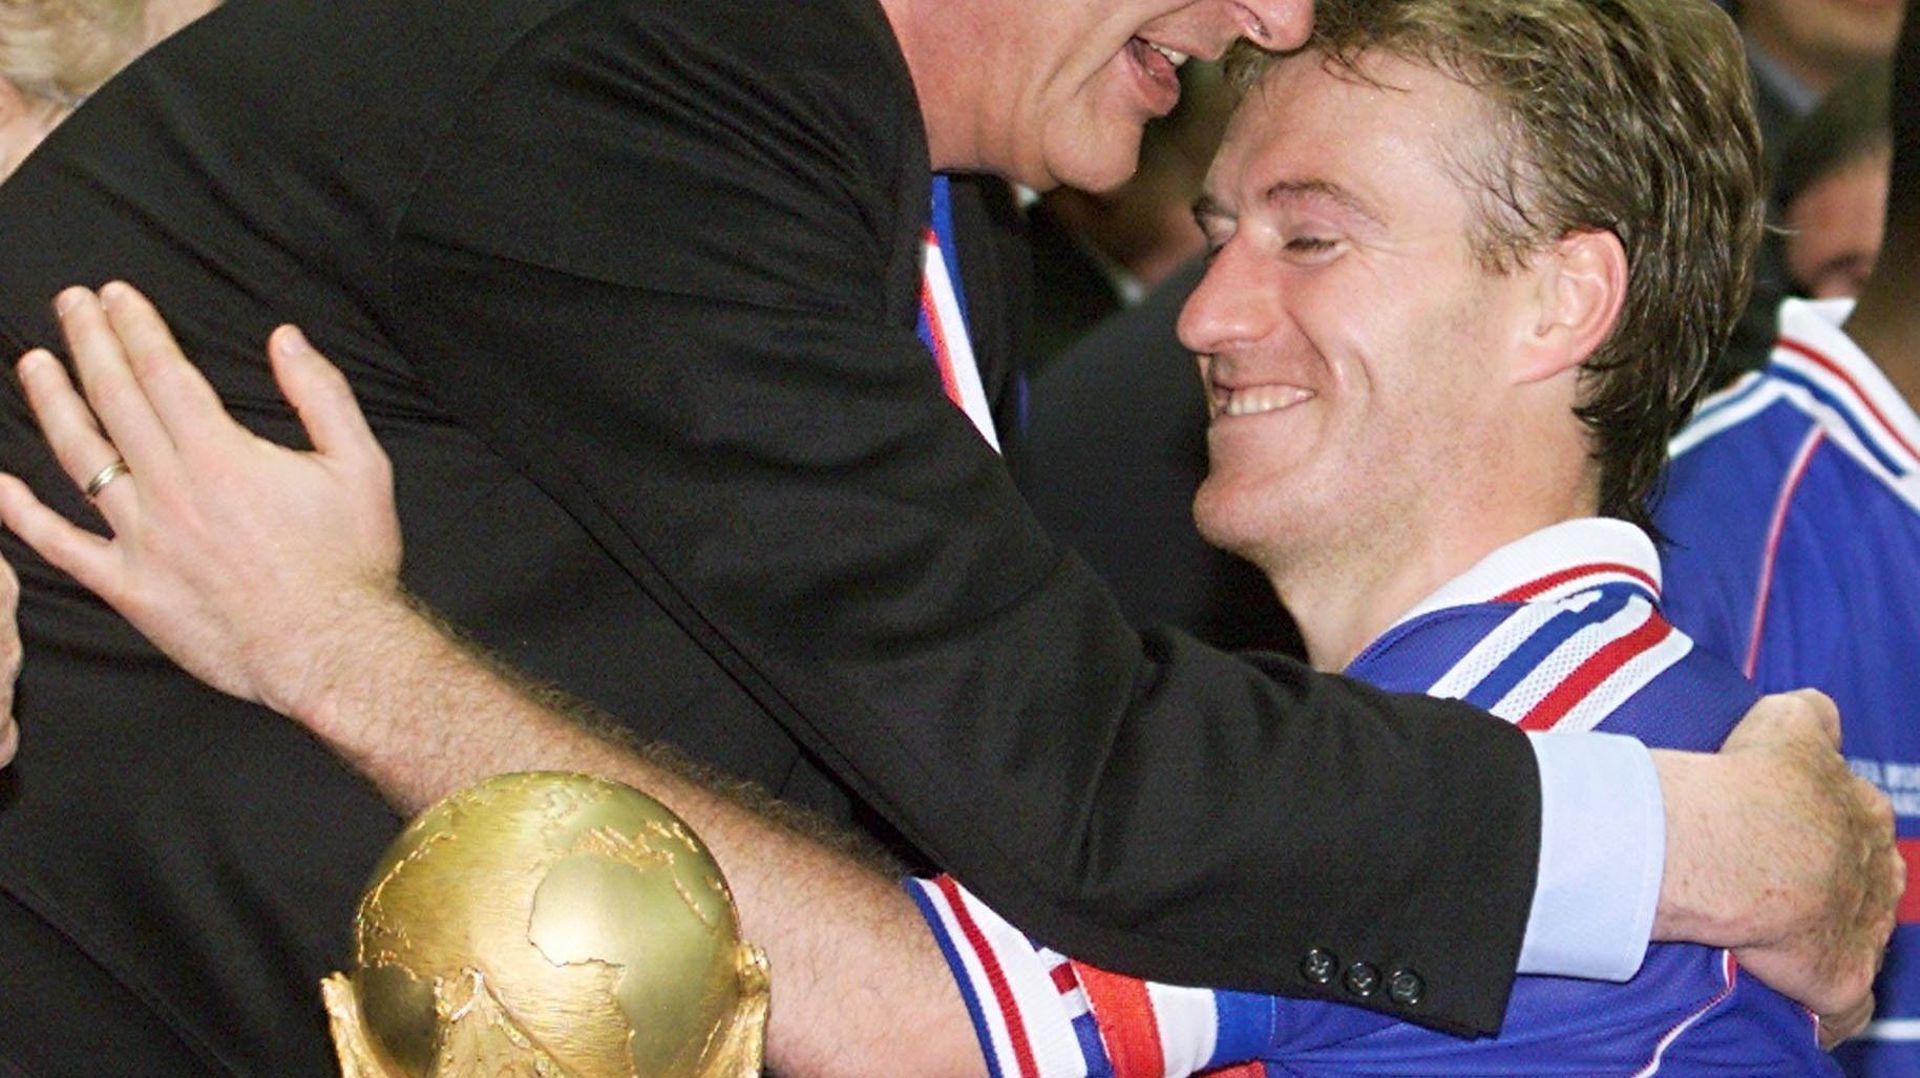 L'image d'Emmanuel Macron prenant Antoine Griezman dans ses bras rappelle celle de Jacques Chirac félicitant Didier Deschamps (alors capitaine de l'équipe).